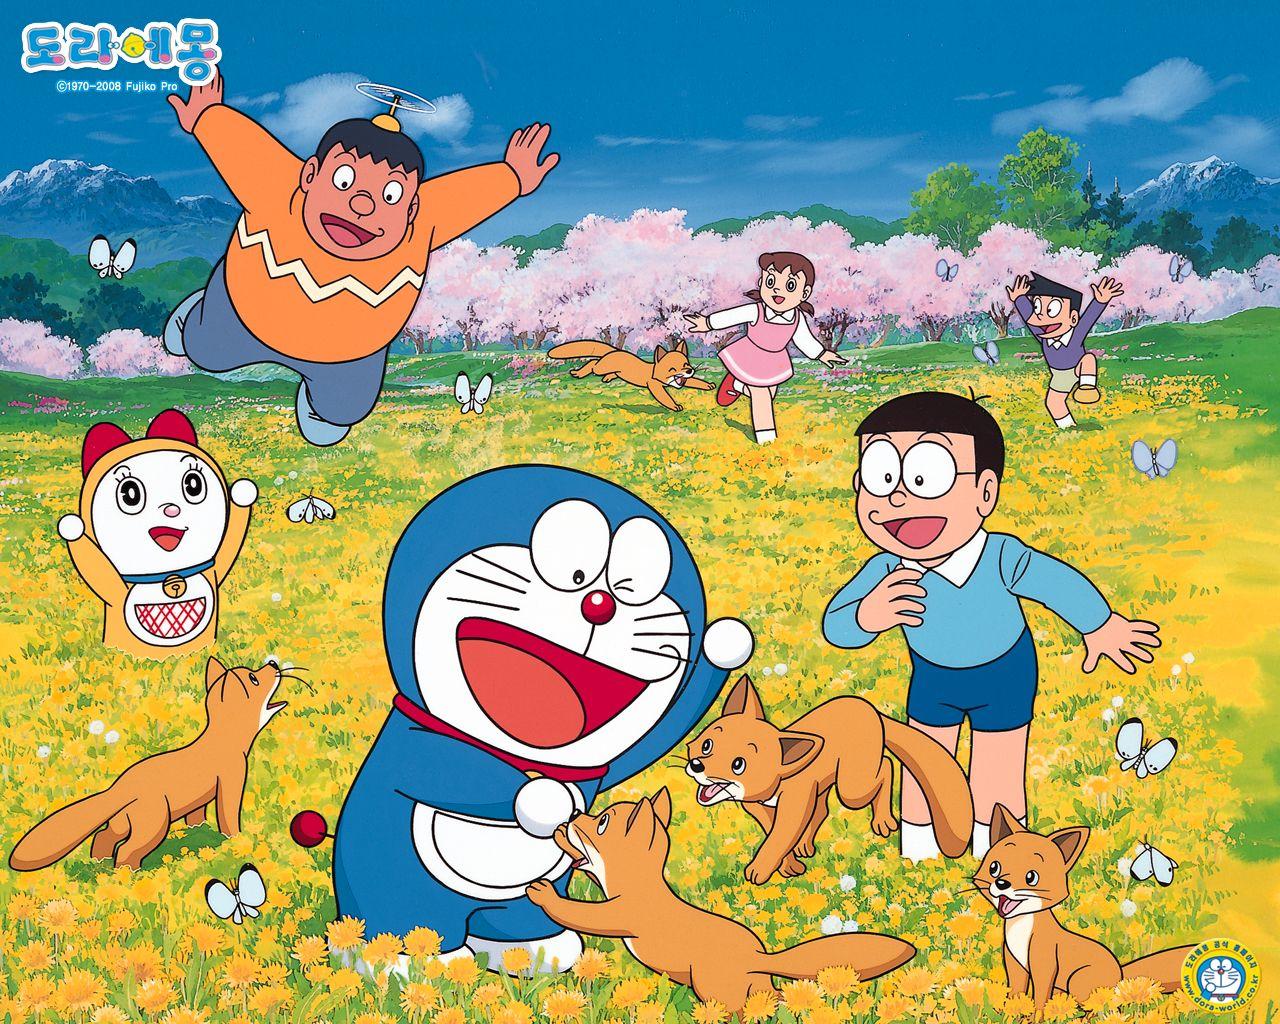 Wallpaper Doraemon For Desktop. Background Wallpaper Gallery